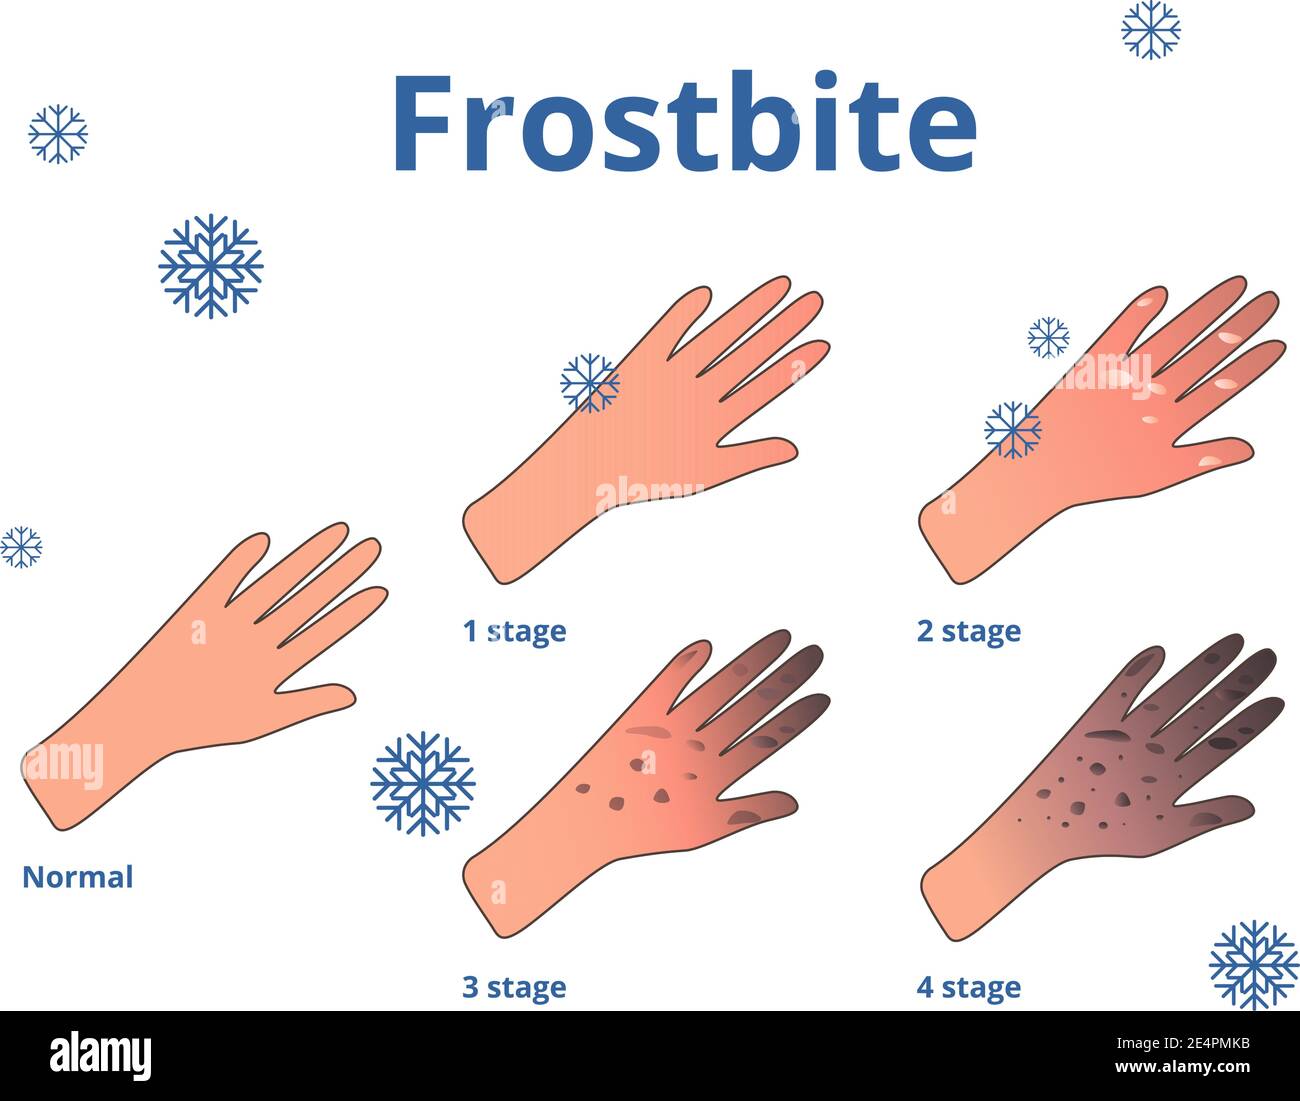 Tavole frostbite, cartoni animati vettoriali illustrazione delle mani Illustrazione Vettoriale